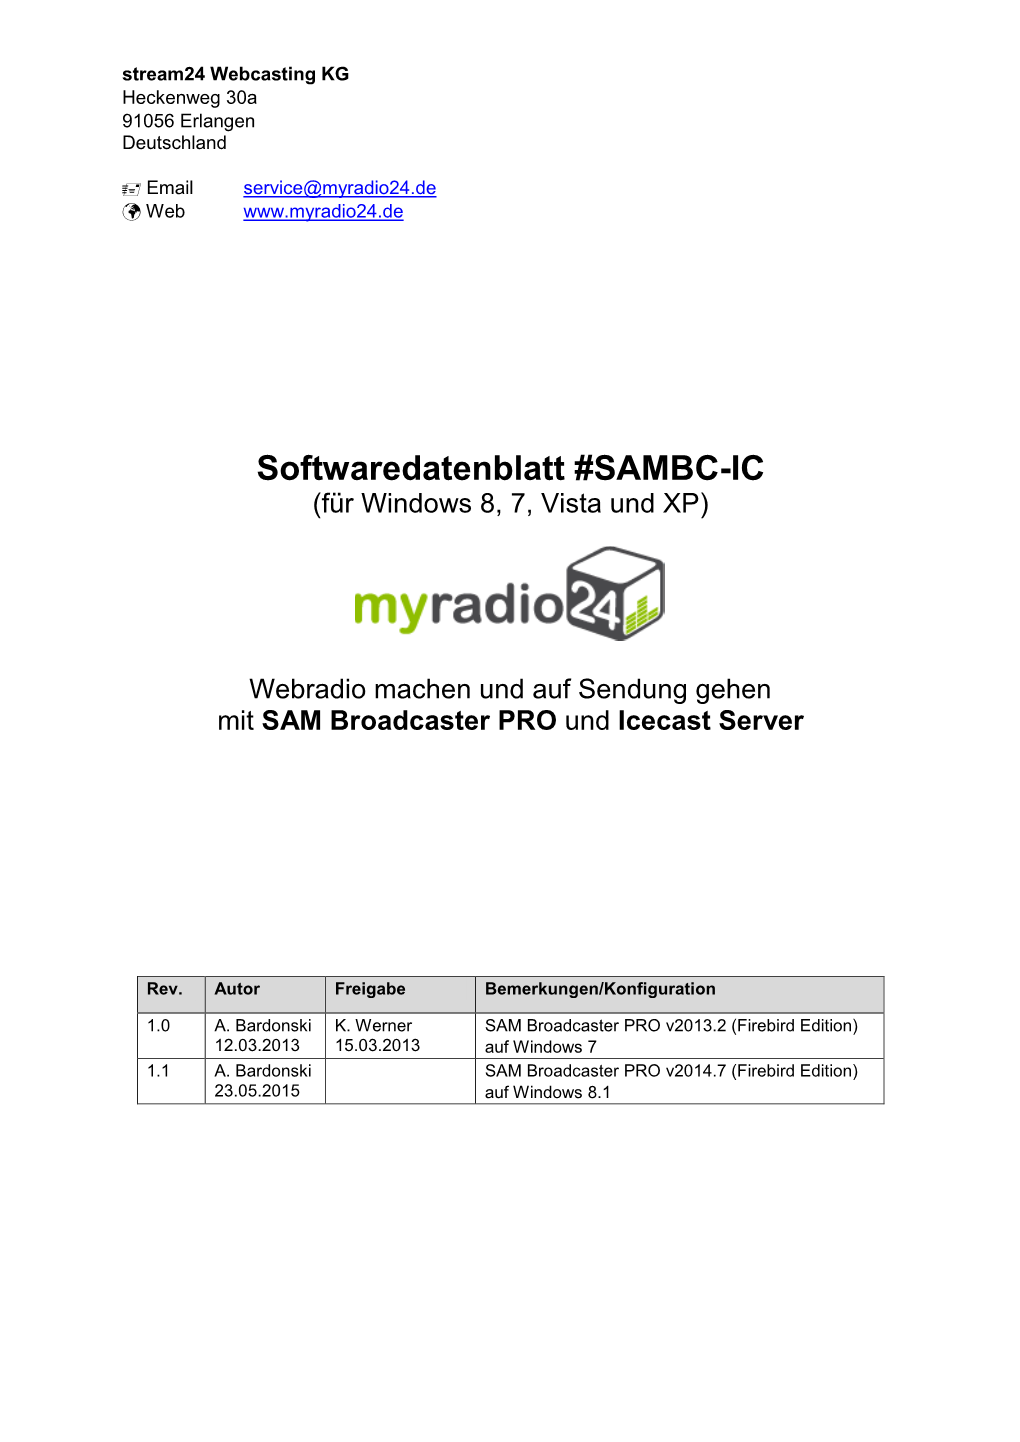 Softwaredatenblatt #SAMBC-IC (Für Windows 8, 7, Vista Und XP)